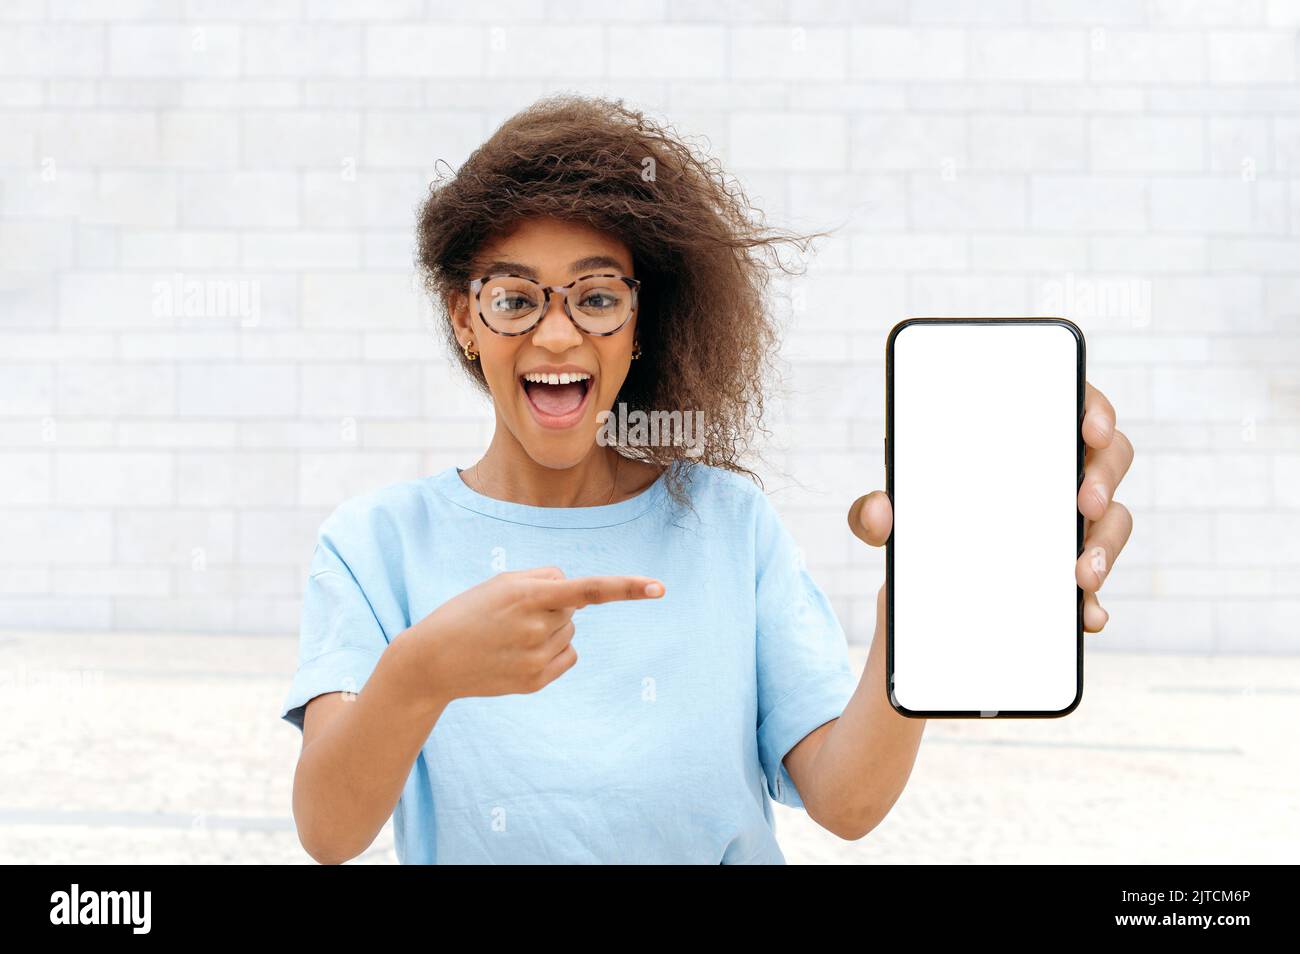 Aufgeregt schockiert staunte afroamerikanische junge Frau mit lockigen Haaren, stilvoll gekleidet, im Freien stehen, zeigt Smartphone mit leerem weißen Mock-up-Bildschirm, zeigt den Finger darauf, schaut überrascht auf Kamera Stockfoto